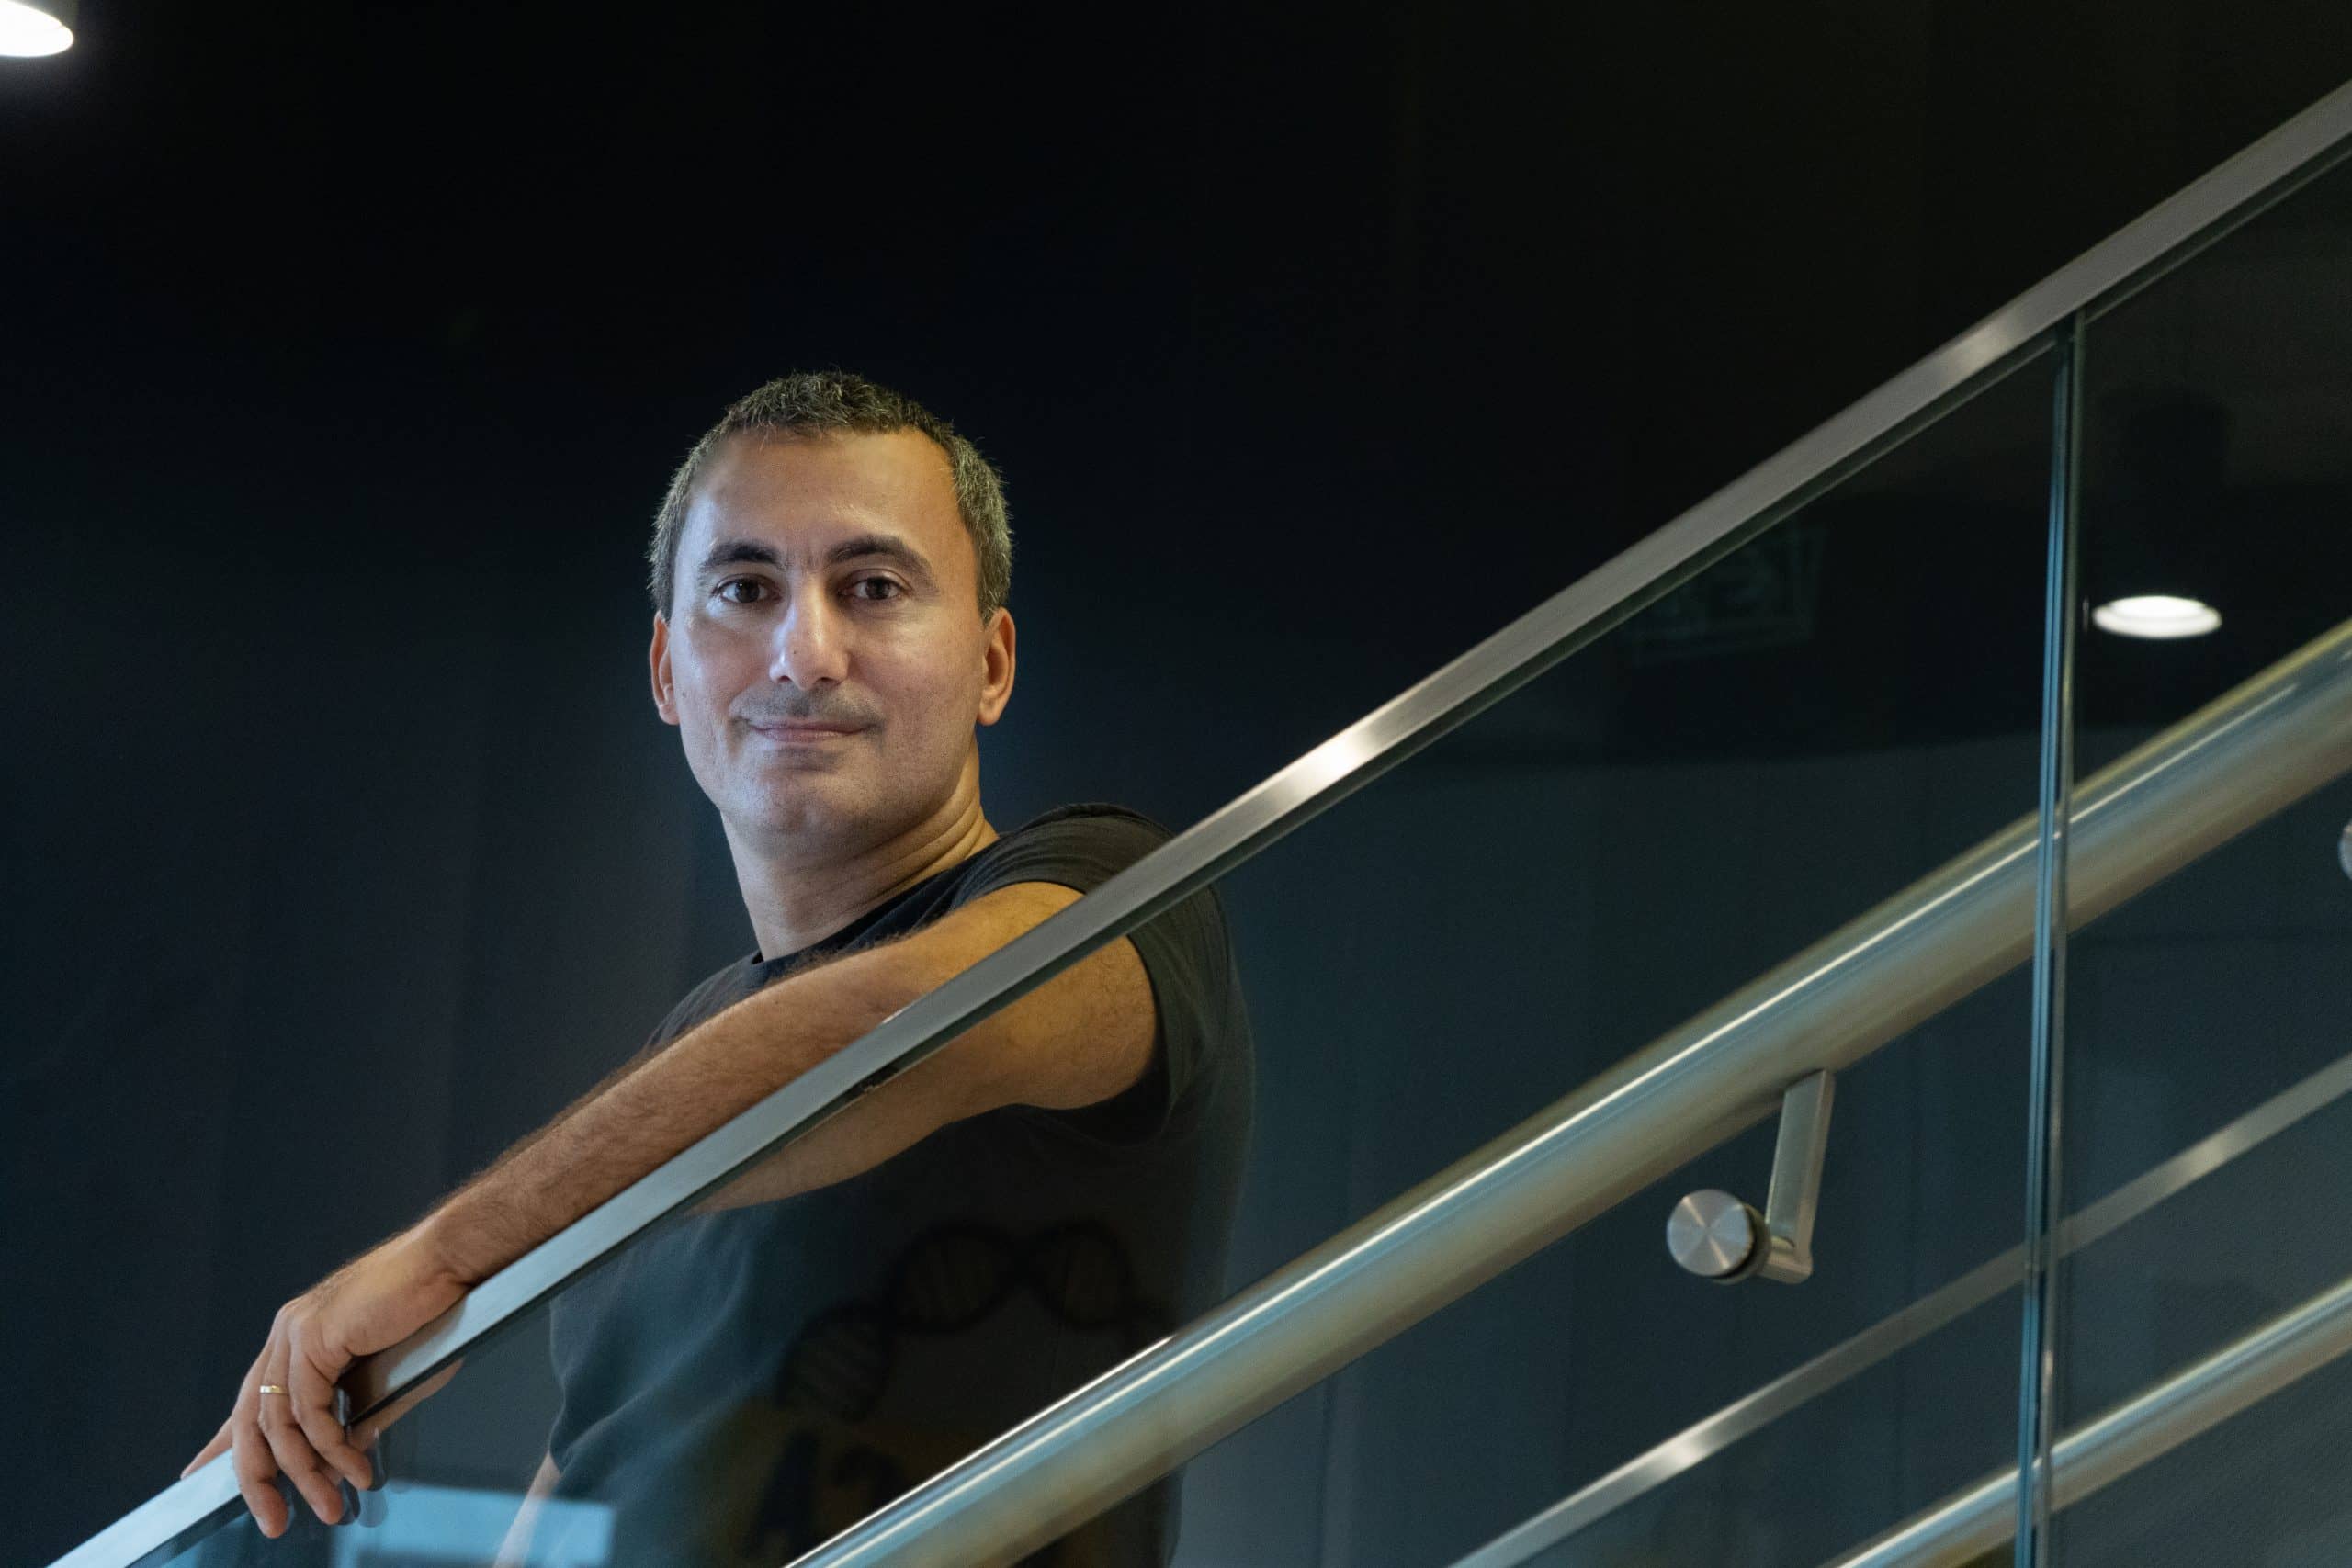 Felipe Salles, Head de Economia do C6 Bank, olhando para a câmera com meio sorriso e um dos braços apoiados no corrimão da escada.